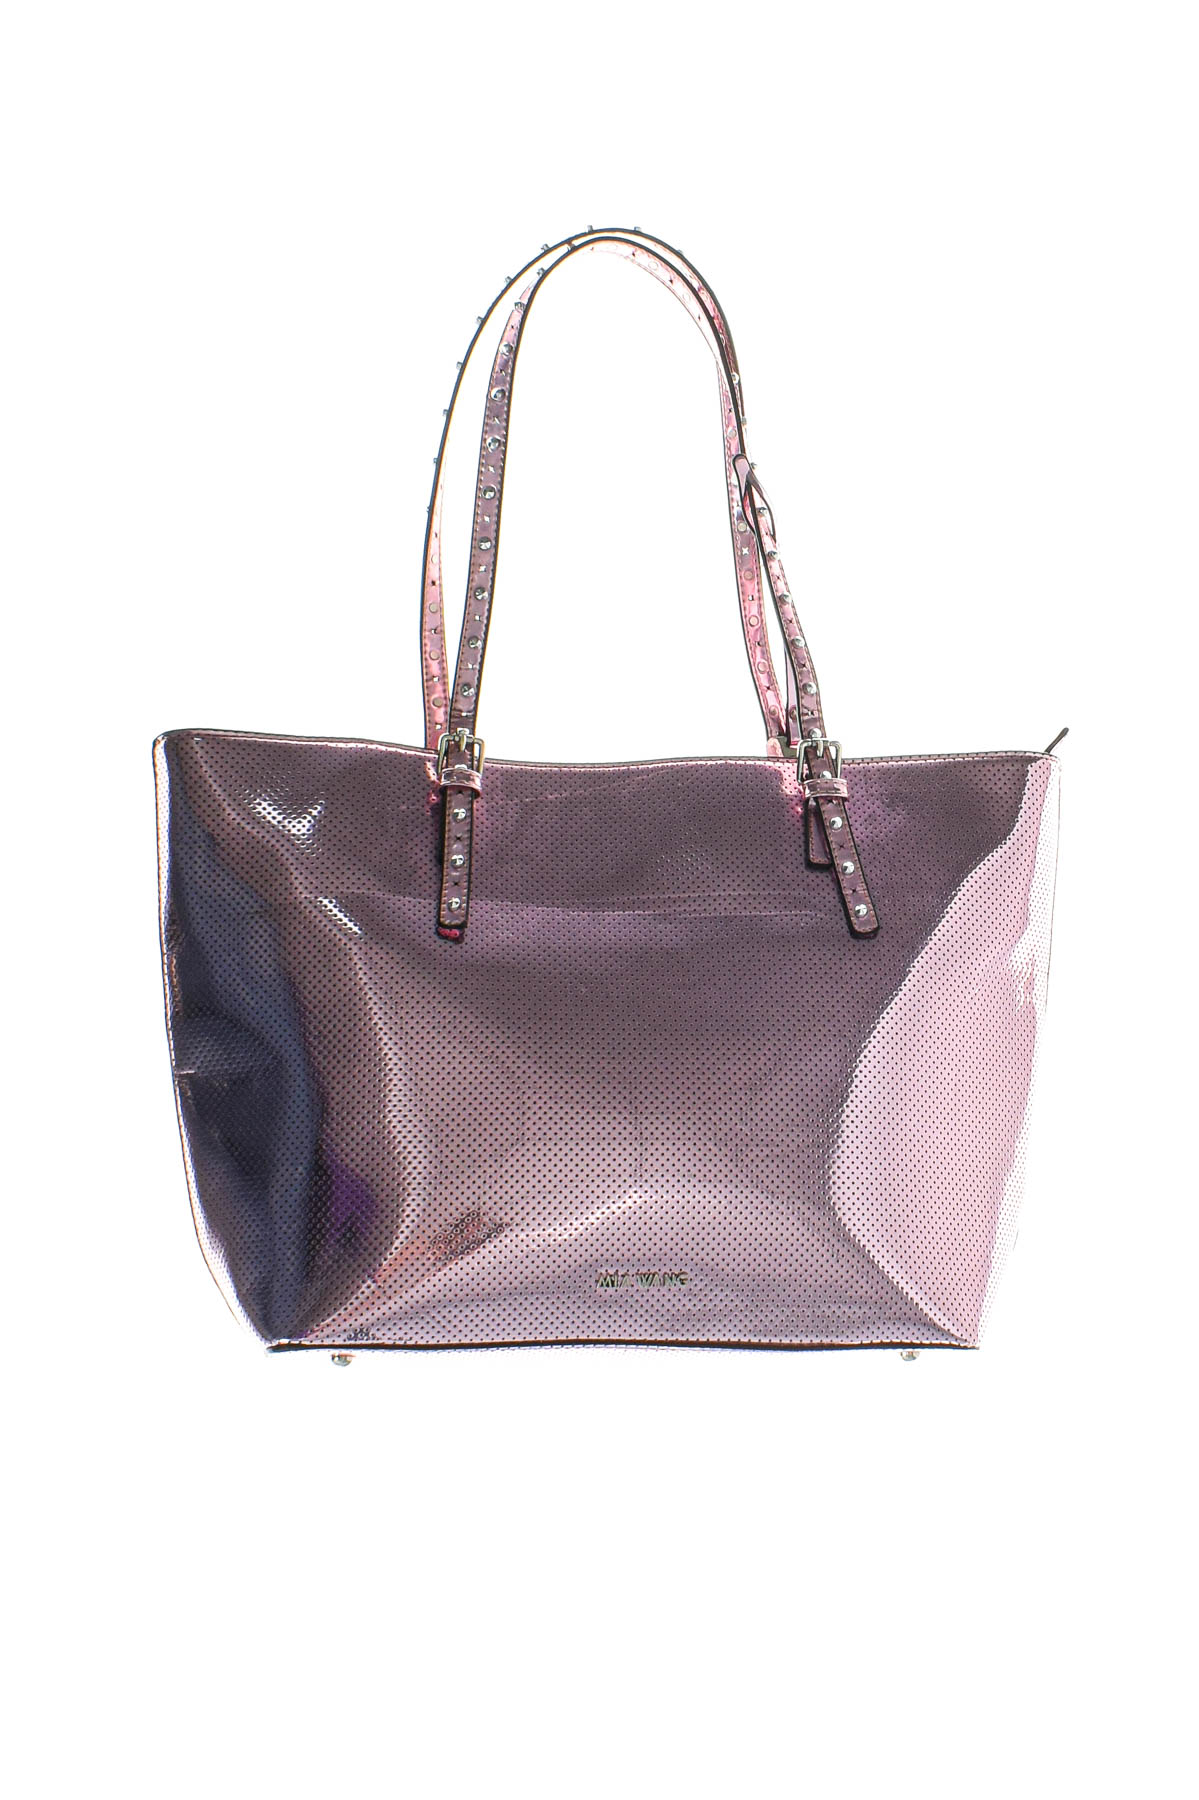 Women's bag - Mia Wang - 0